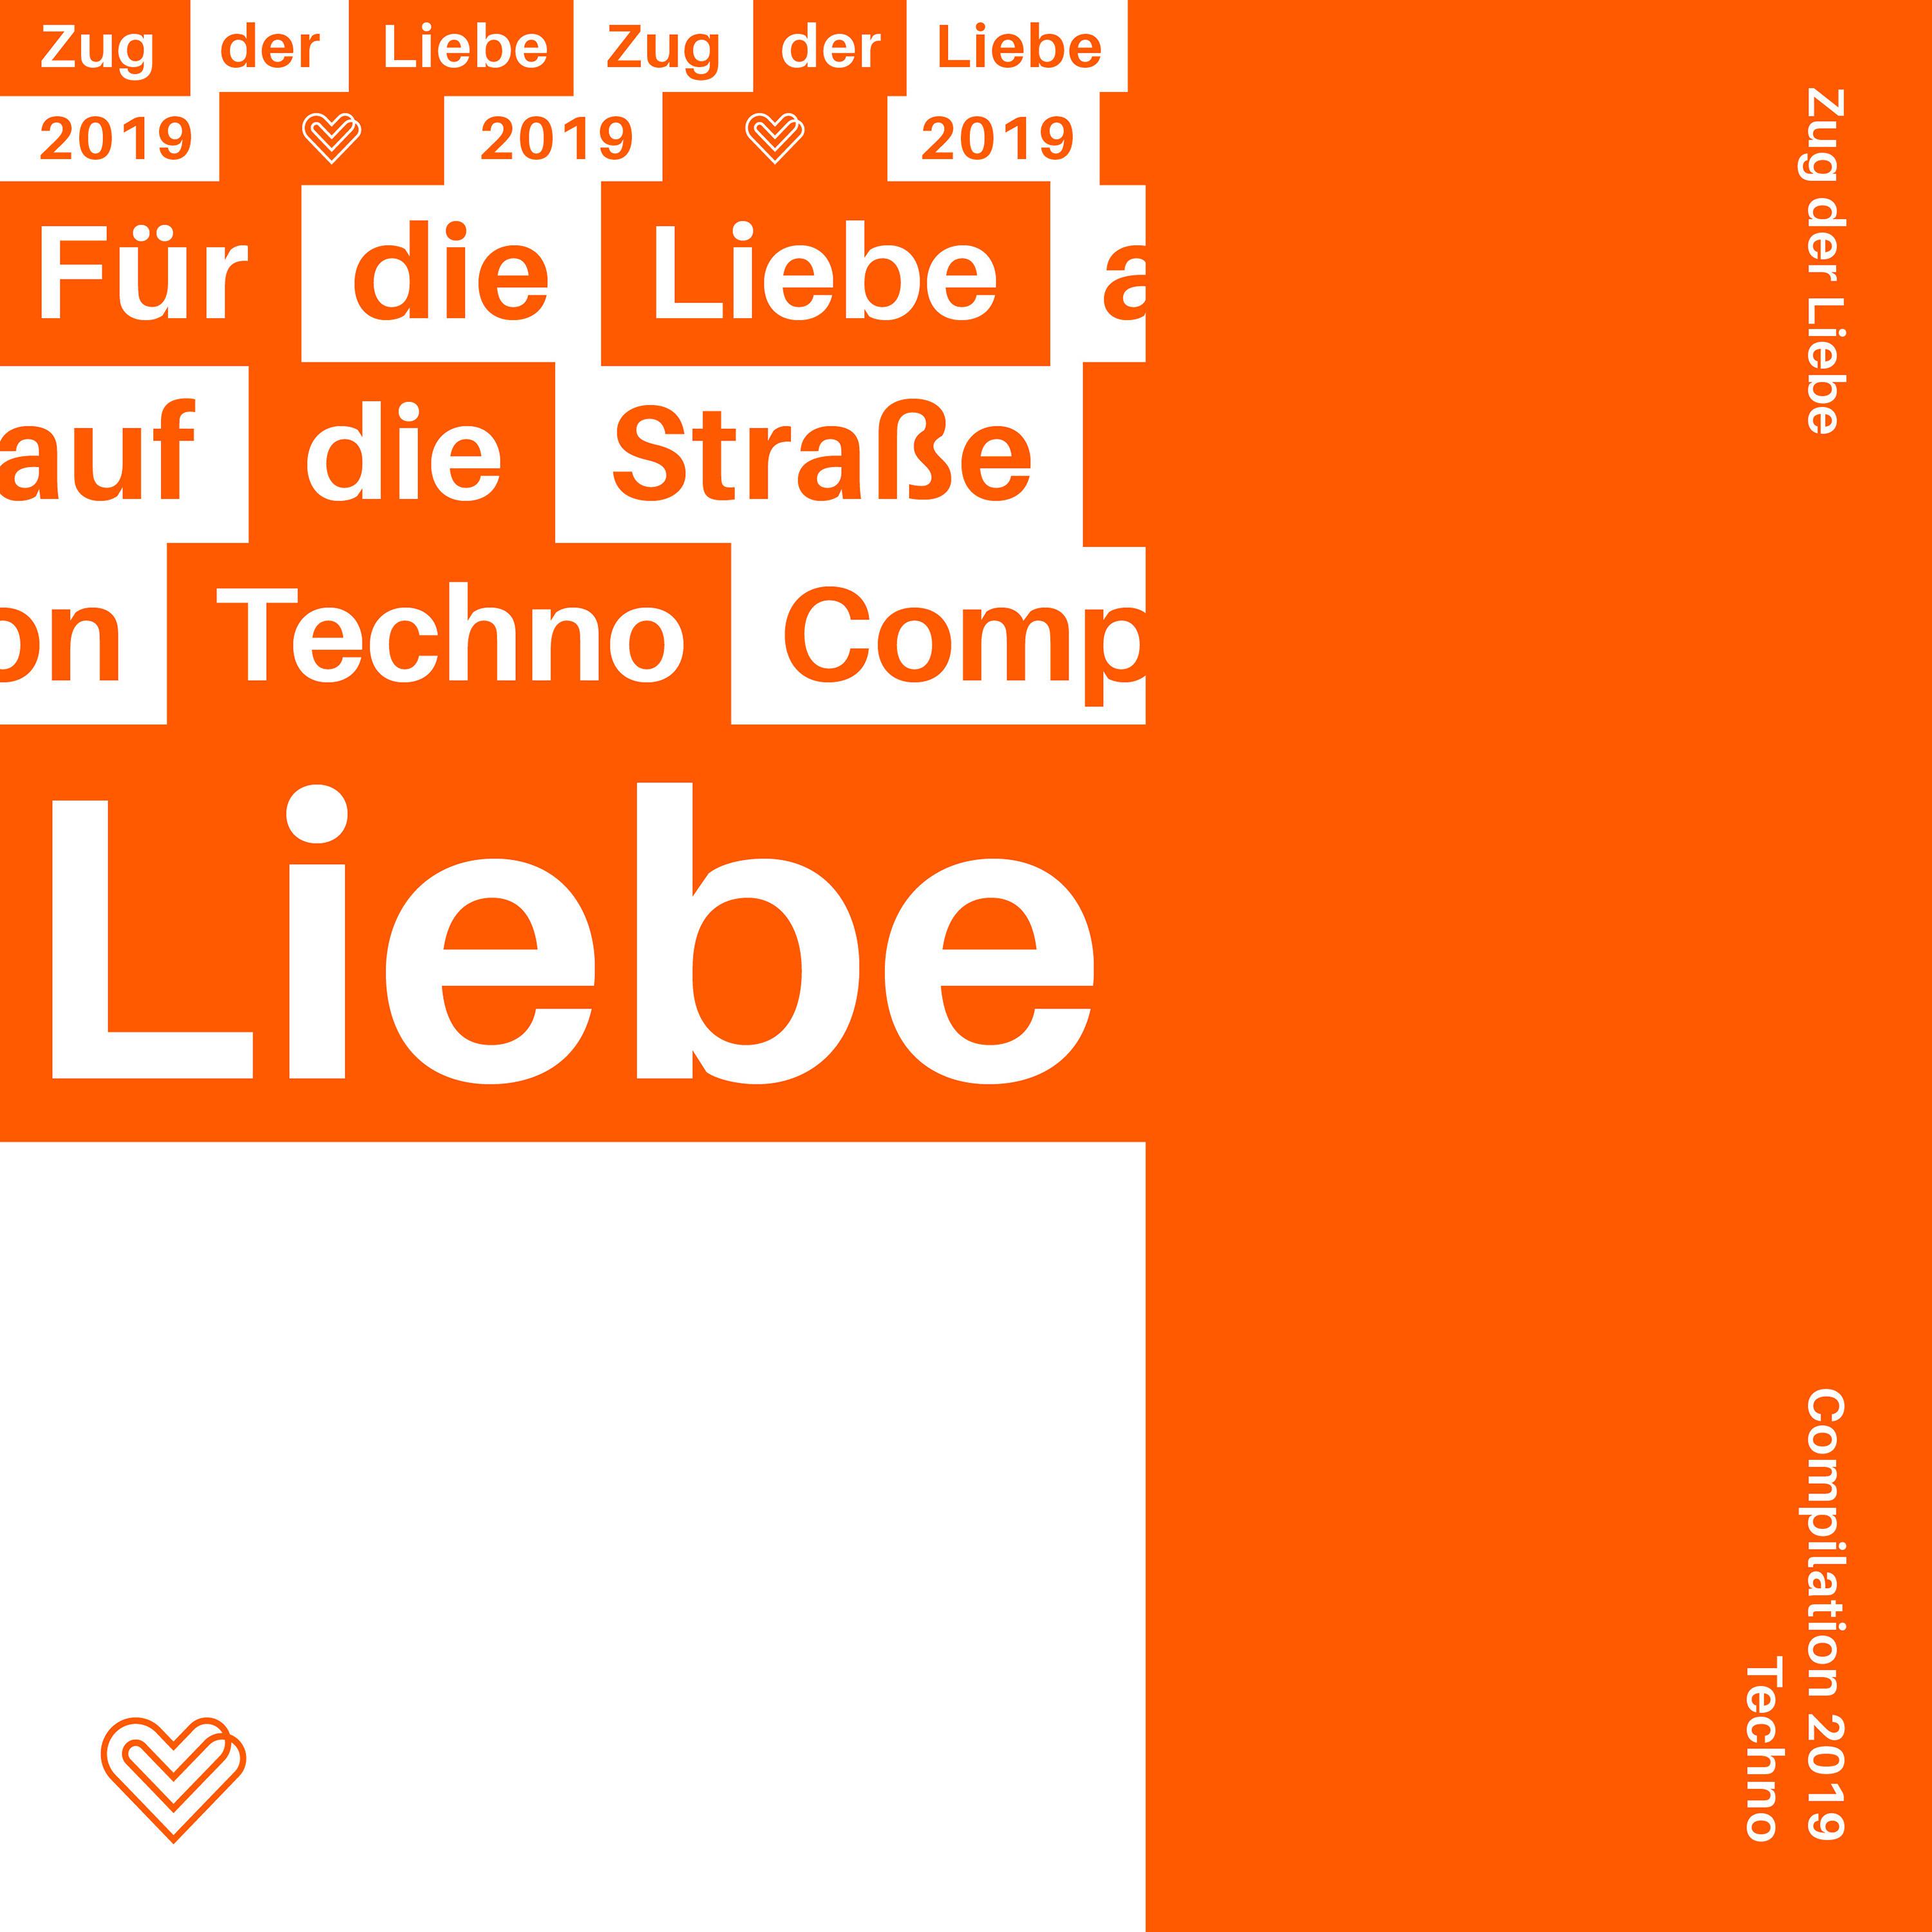 Zug der Liebe Compilation 2019 - Techno